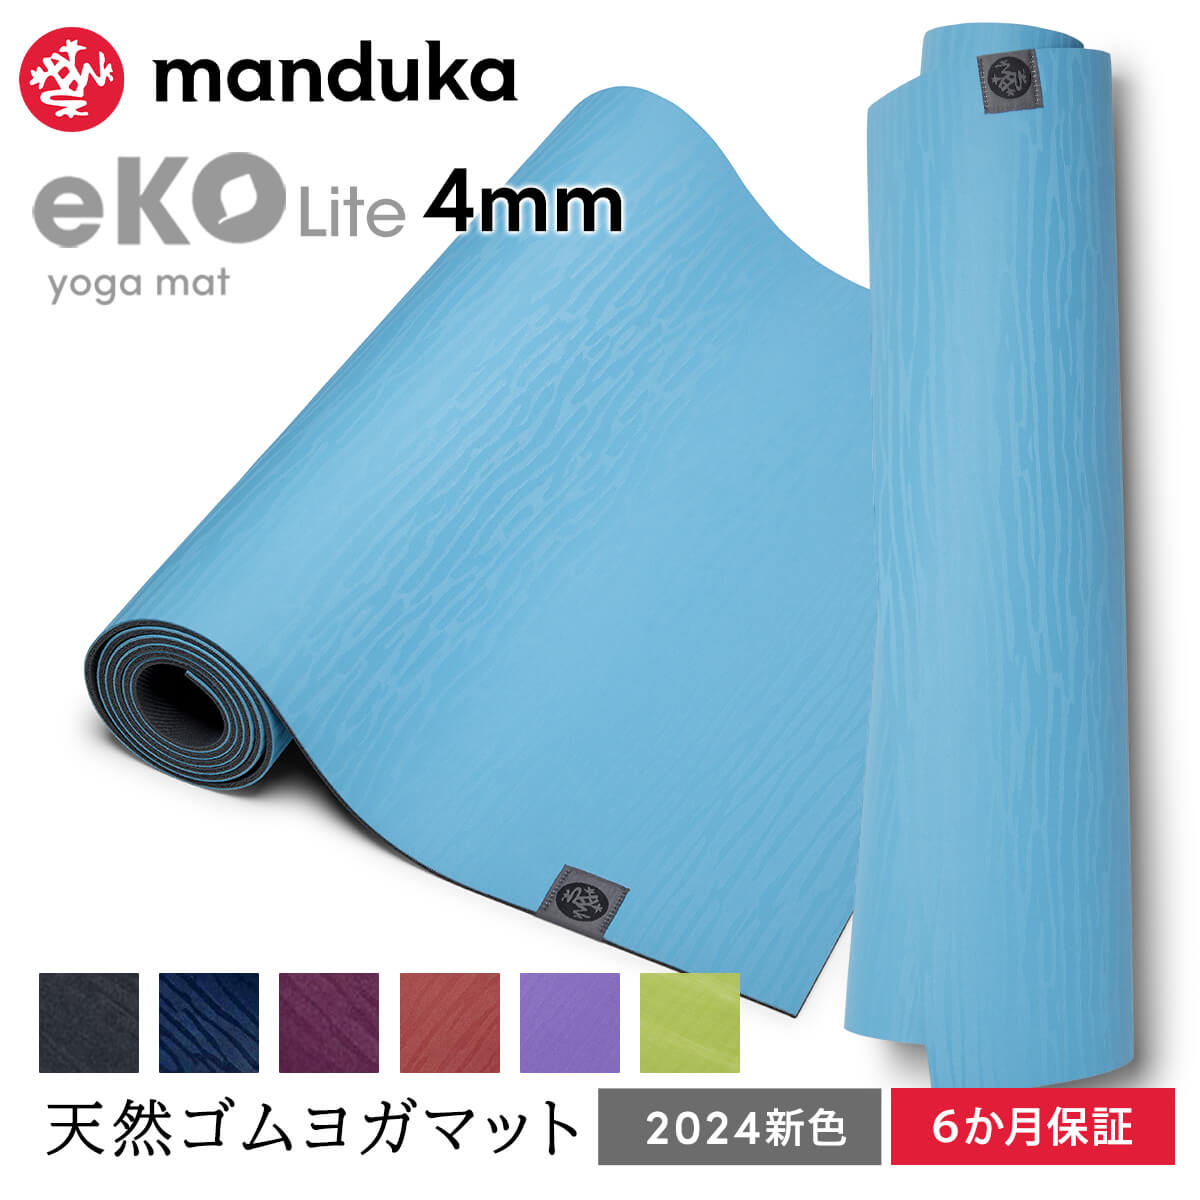 マンドゥカ Manduka ヨガマット エコライト 4mm 《6か月保証》日本正規品 | eKO Lite yoga mat 天然ゴム 筋トレ トレーニング ピラティス 柄 24SS「MR」001 RVPA